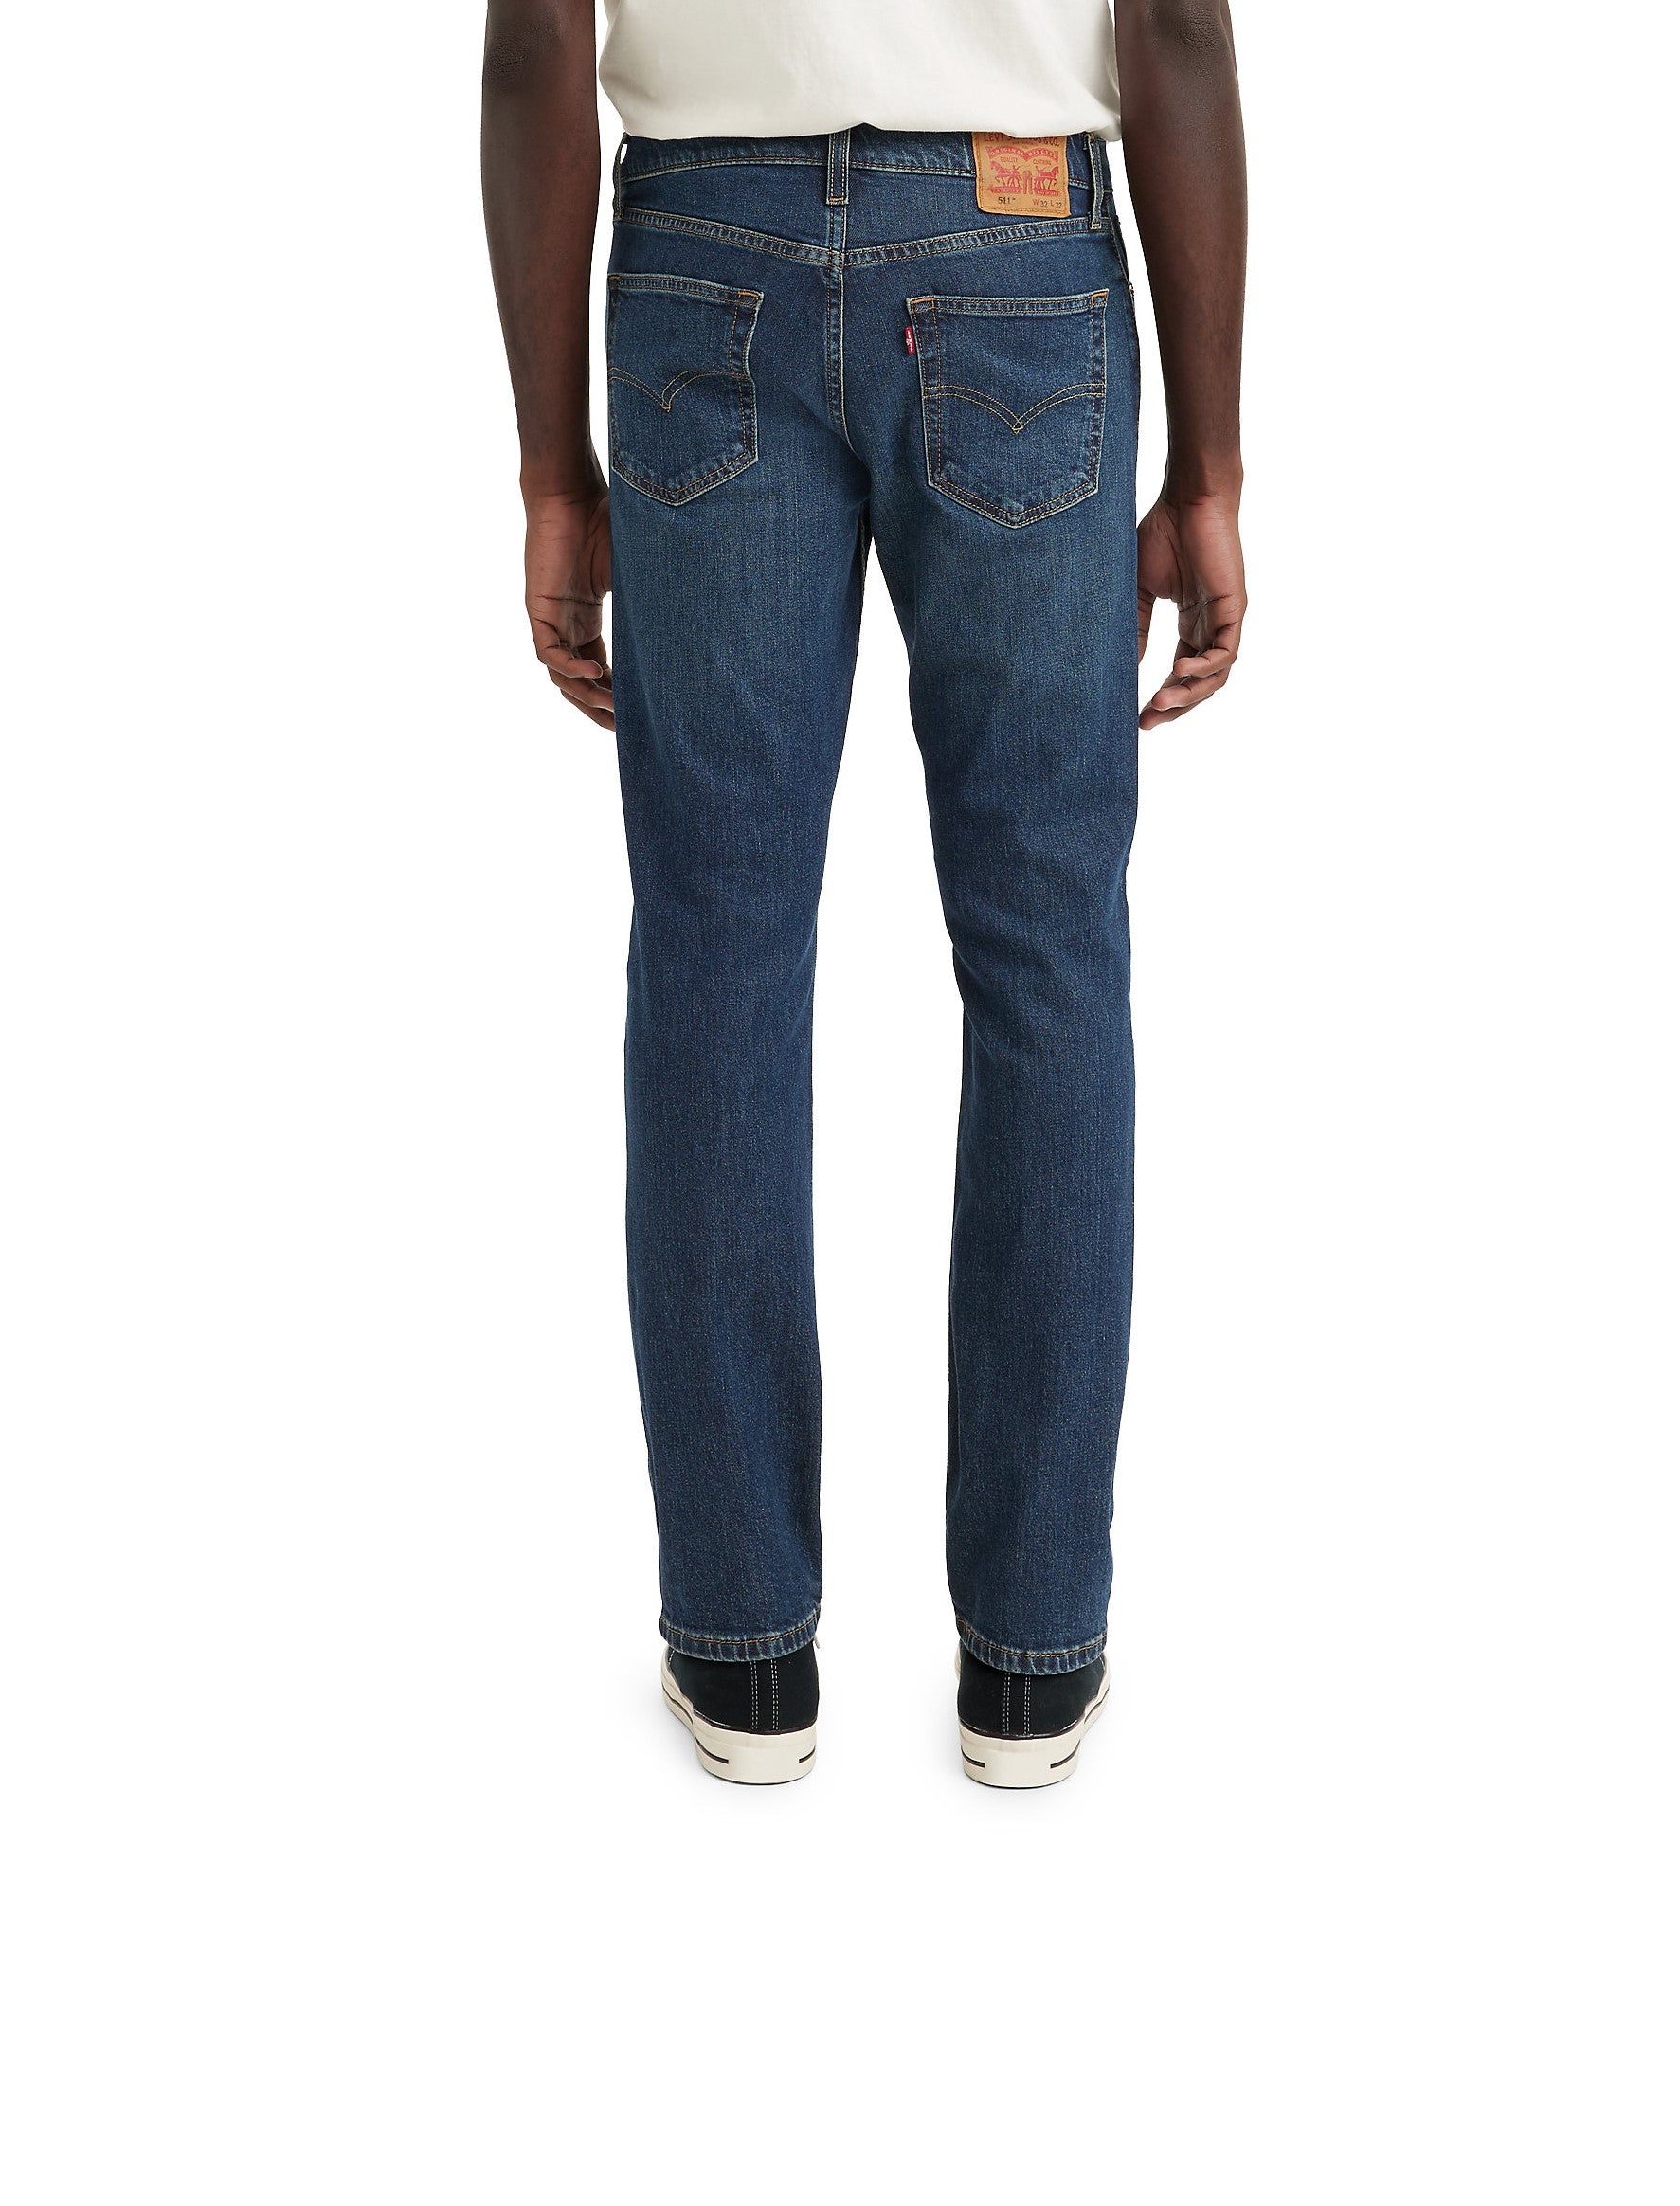 pantalones-jeans-levis-511-slim-figure-p-caballer